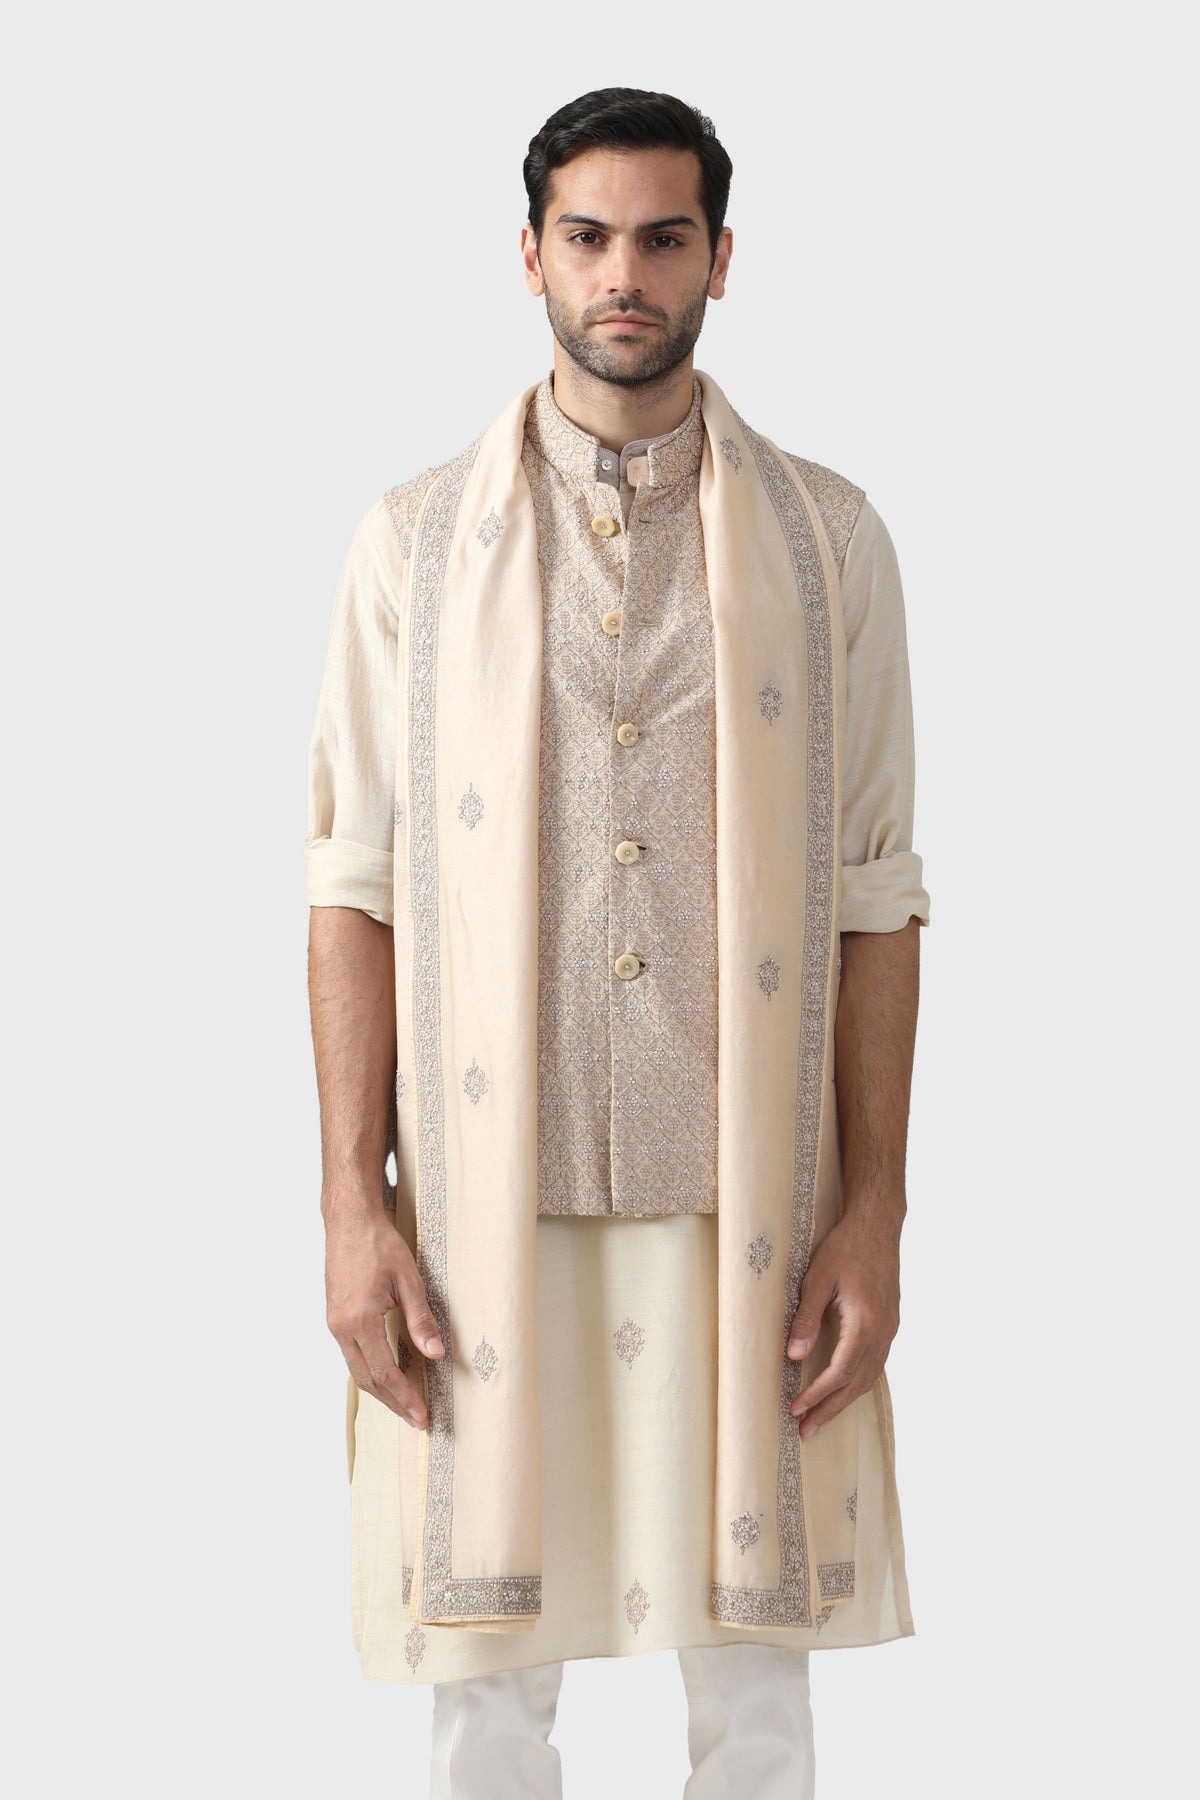 The Marwar Waistcoat